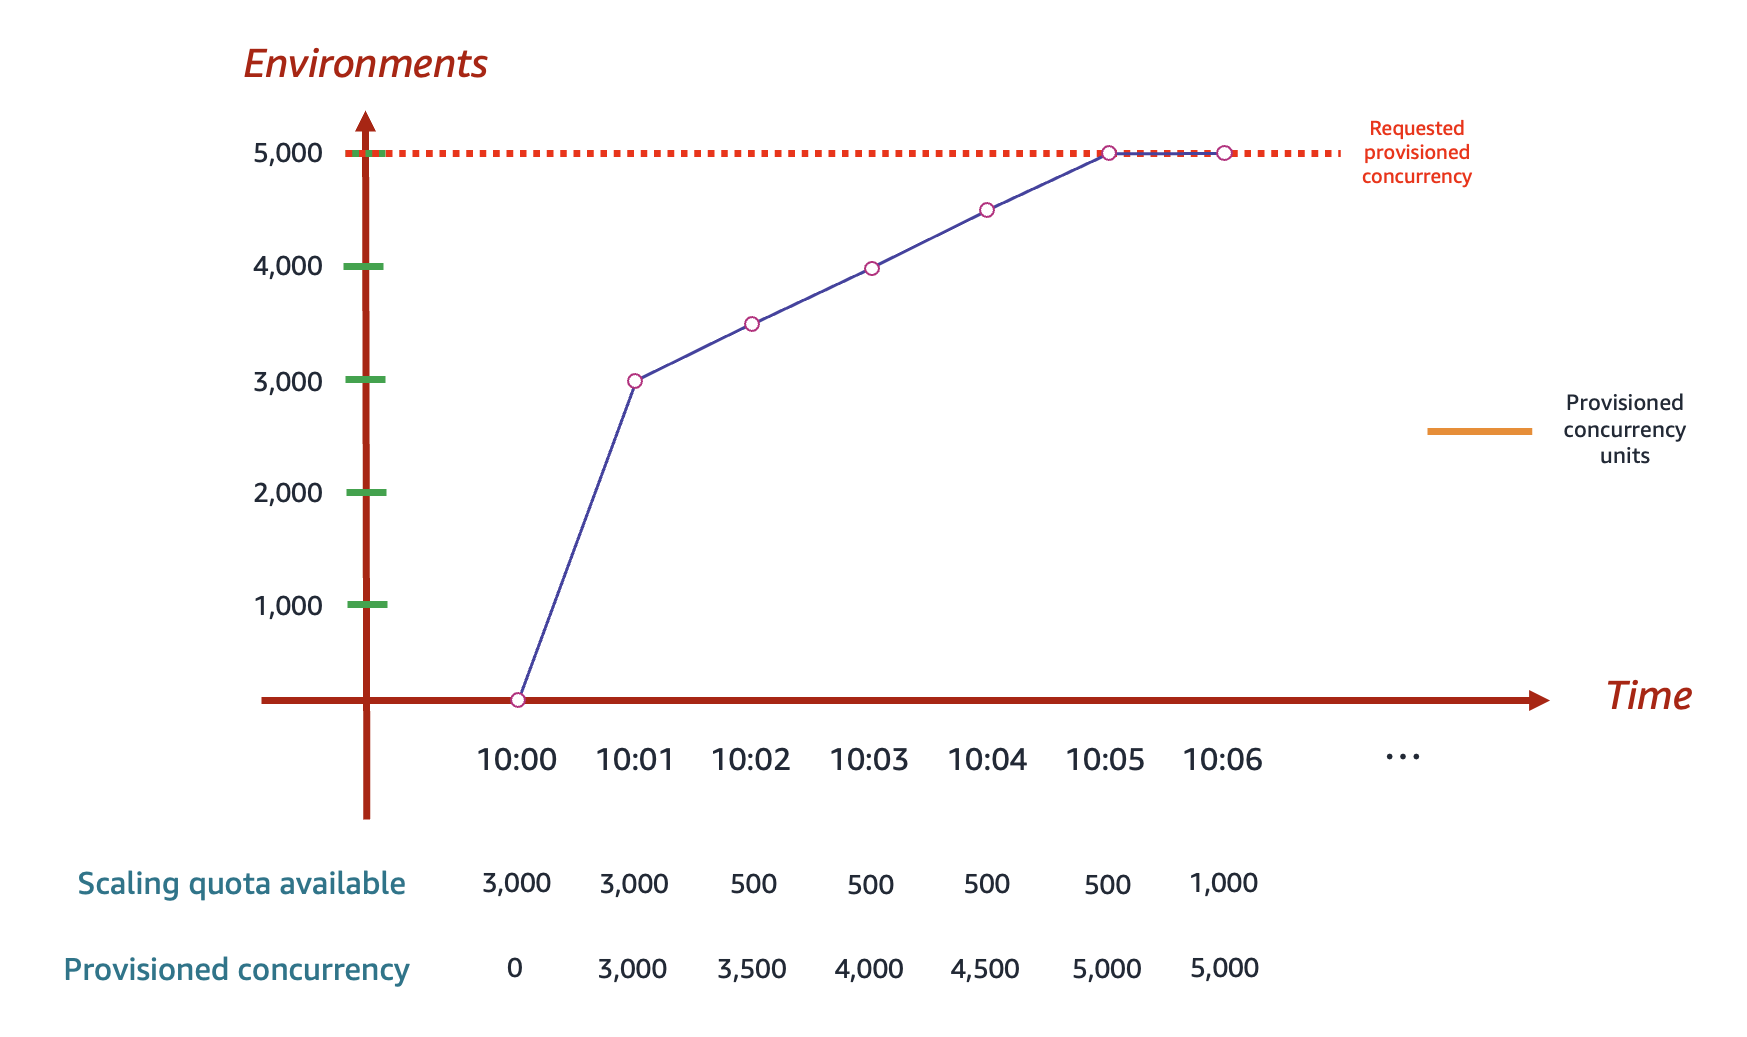 
          Lambda がプロビジョニングされた同時実行インスタンスをどのように割り当てるかを示す折れ線グラフ。
        